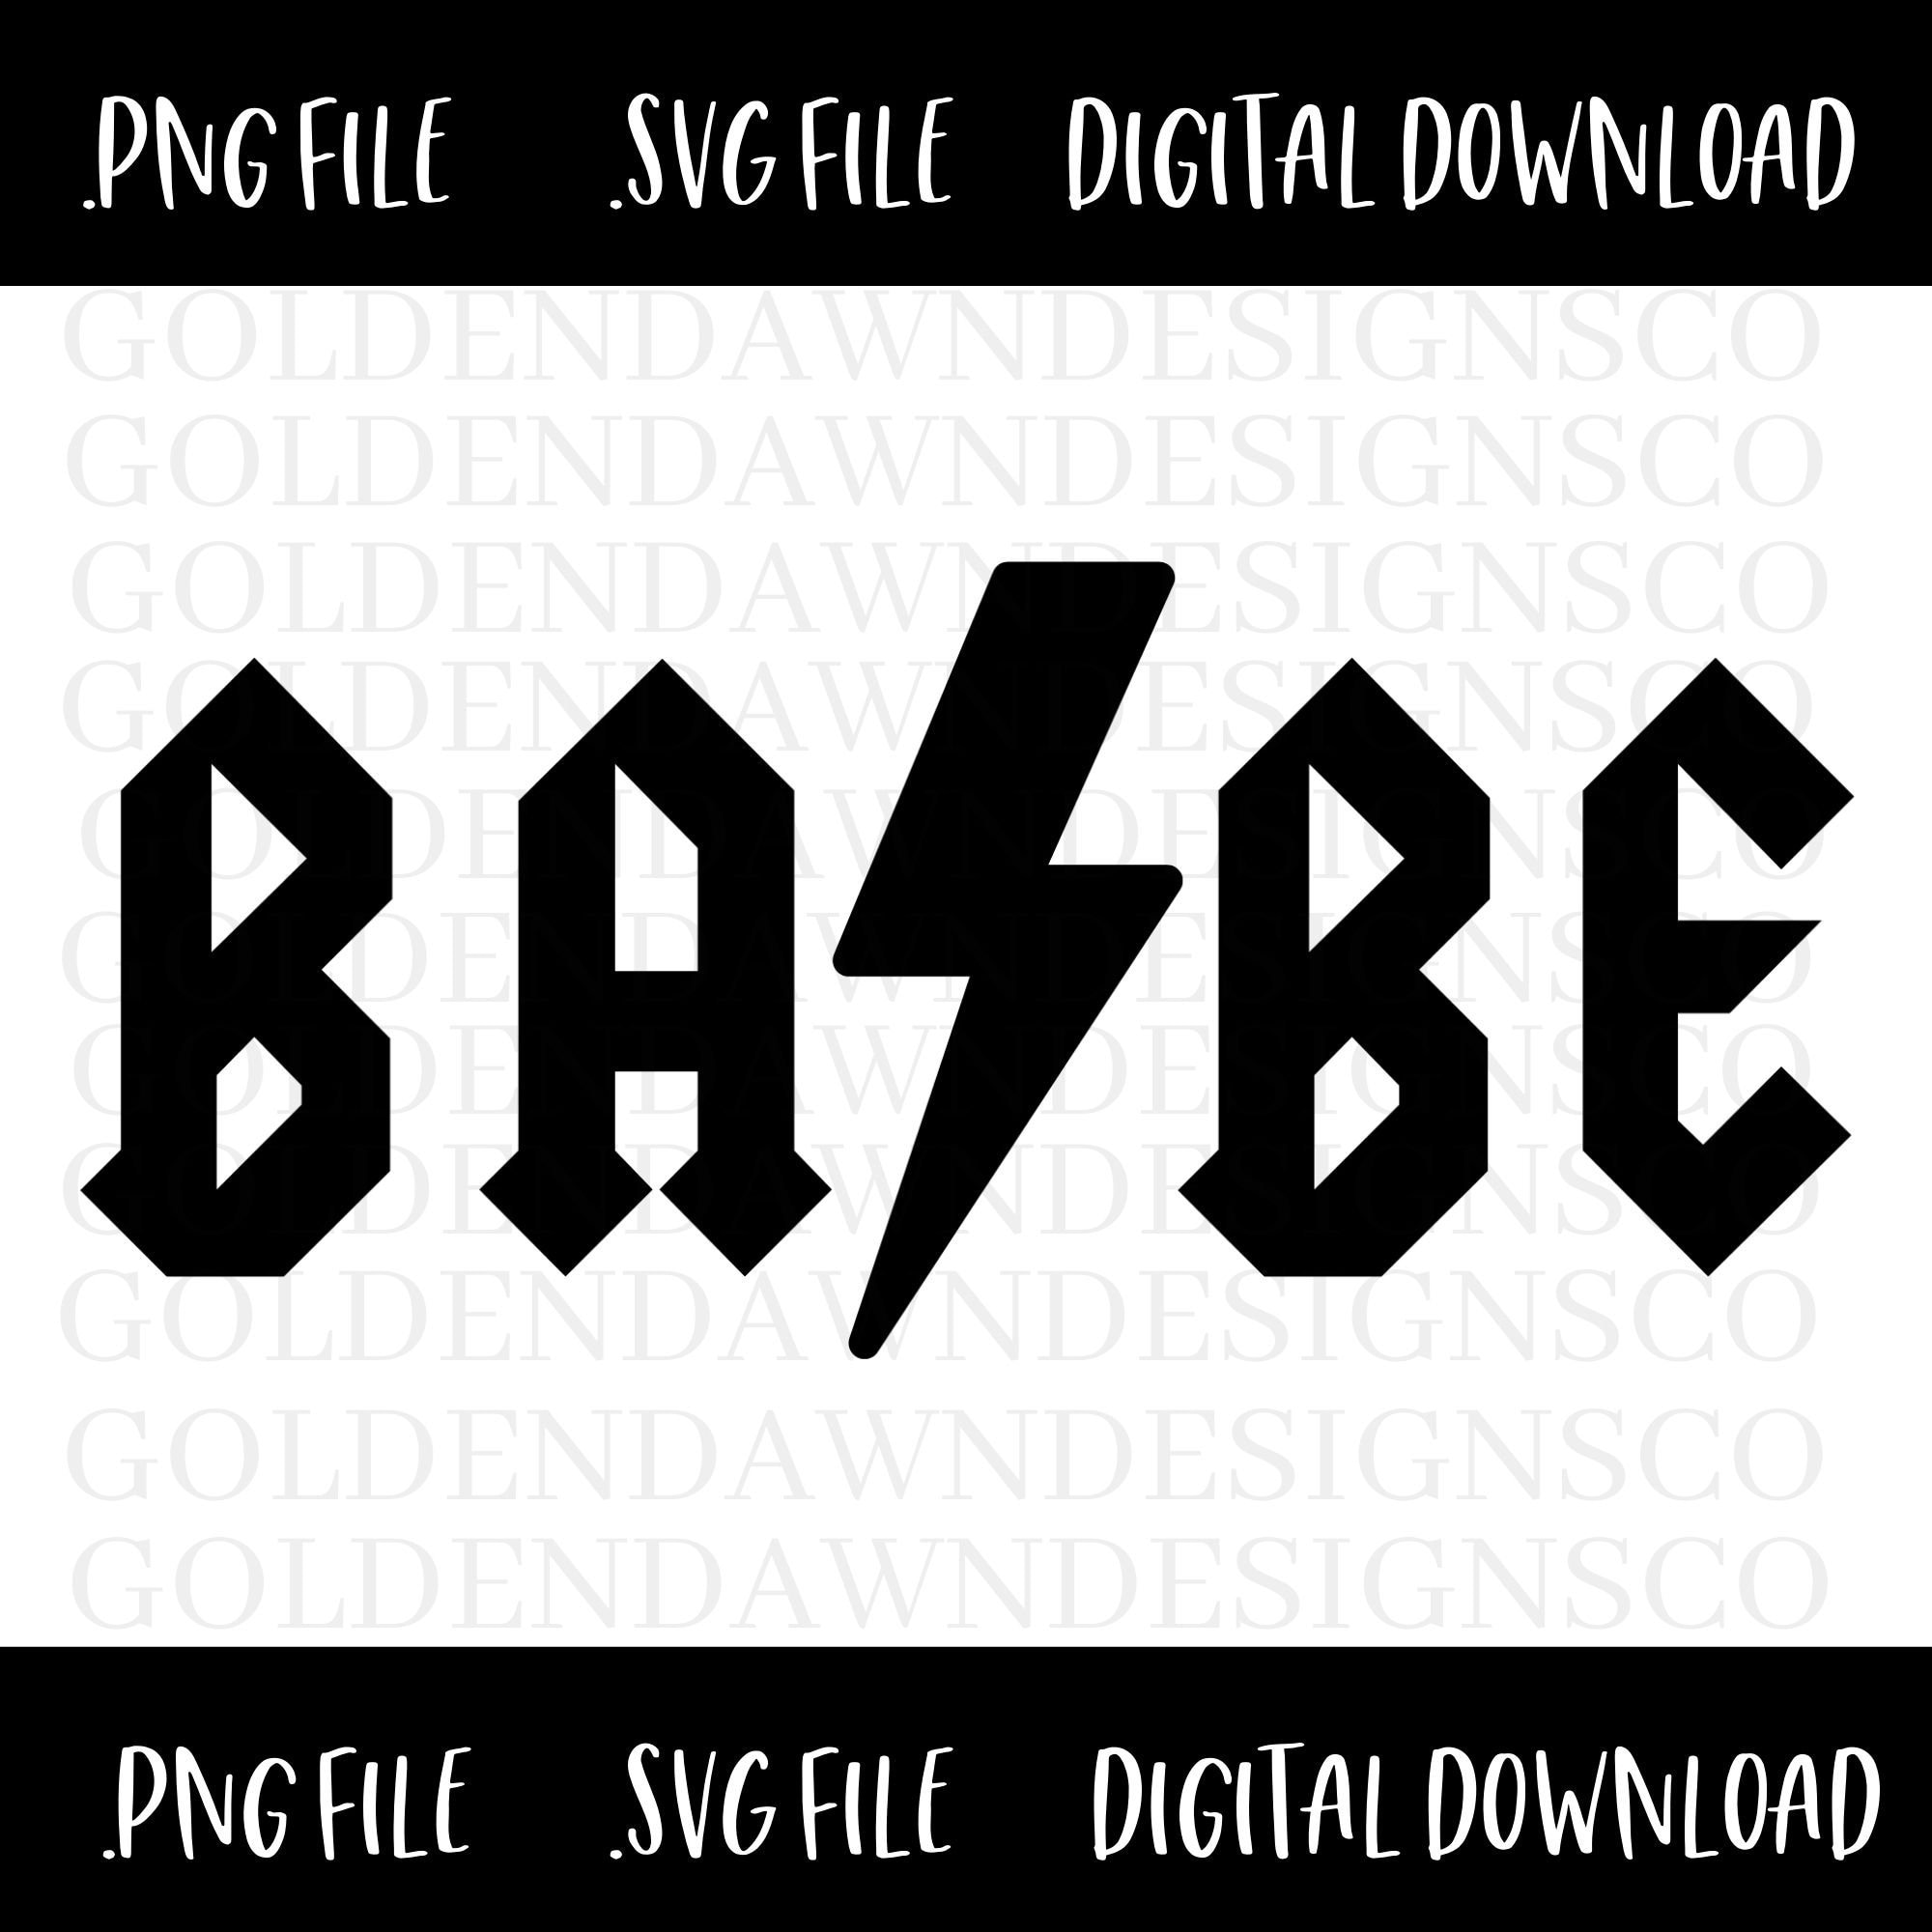 Babe Alert 90's Retro PNG Digital SUBLIMATION , Vinyl, Digital Design  Download 